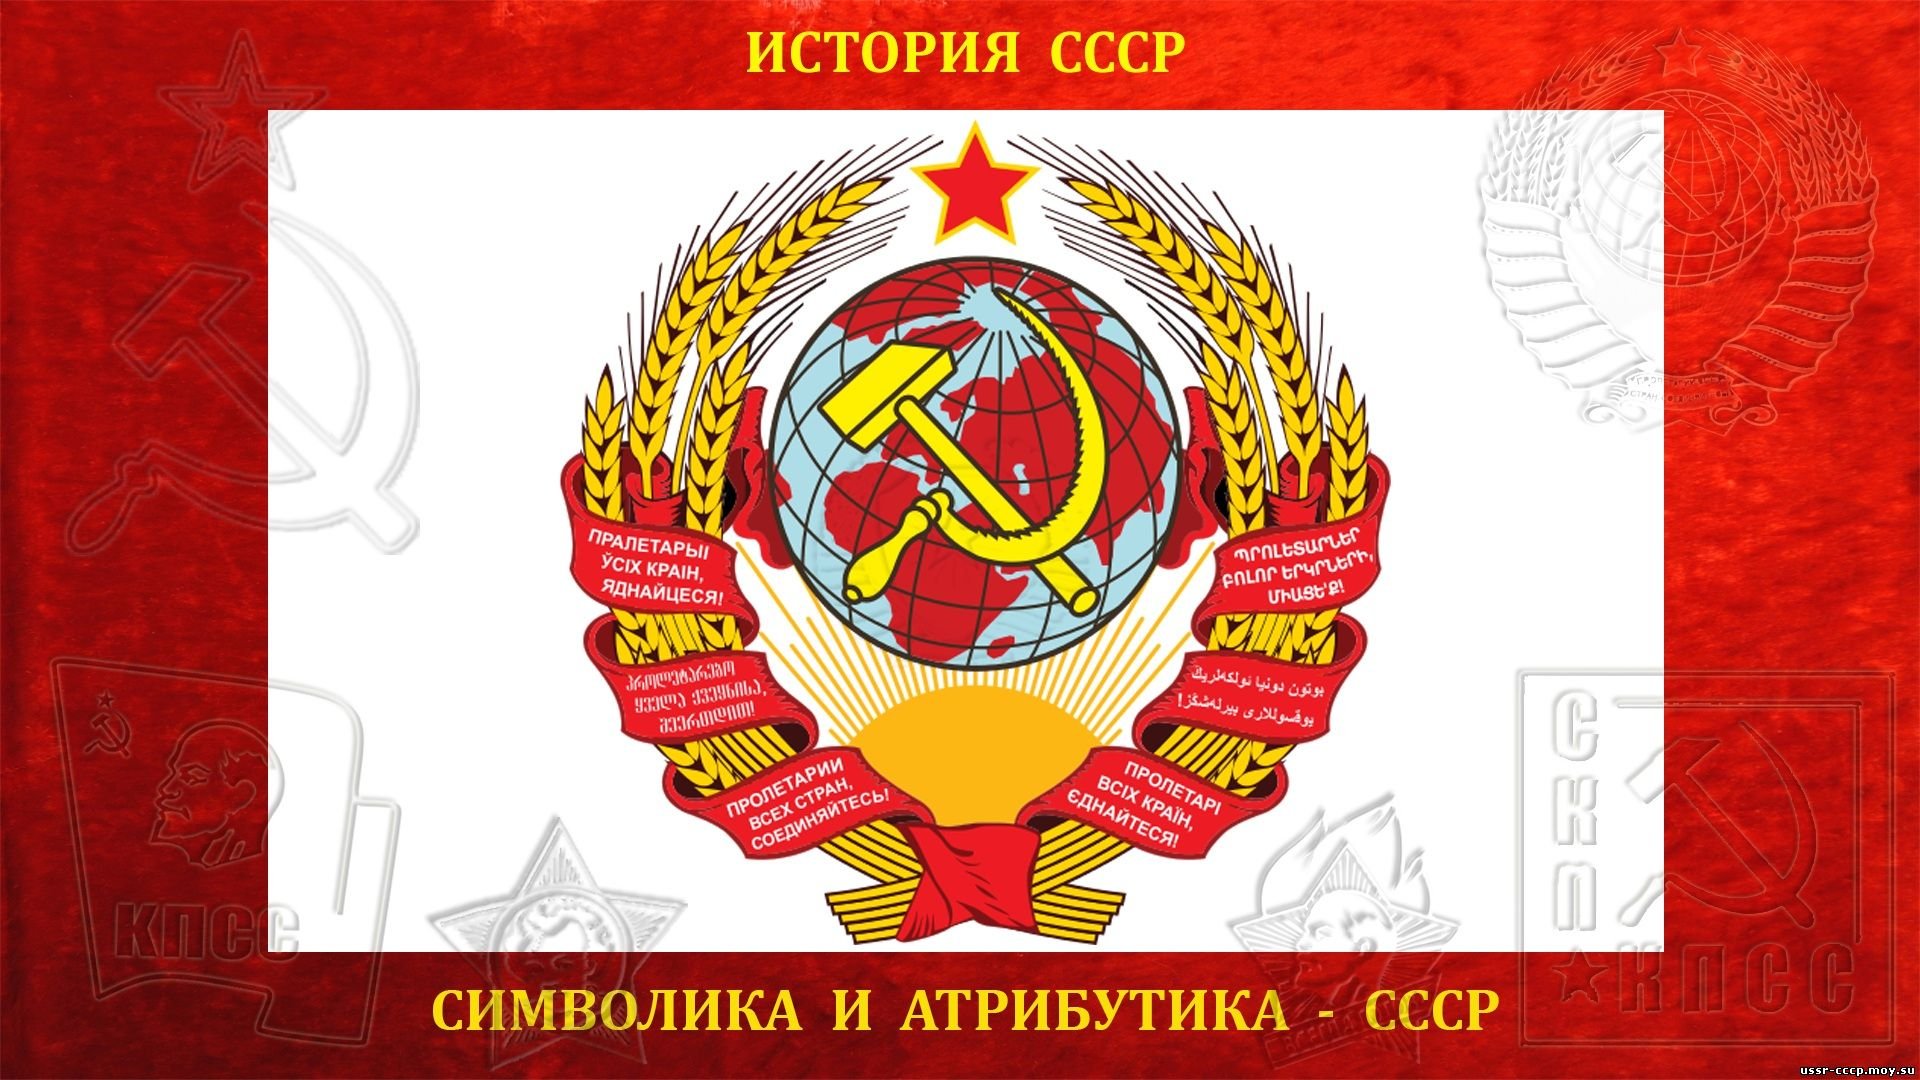 В каком году состоялся советский союз. Первый герб СССР 1922. Первый герб СССР 1924. Гербы СССР 1923-1991. Герб СССР образца 1923 года.